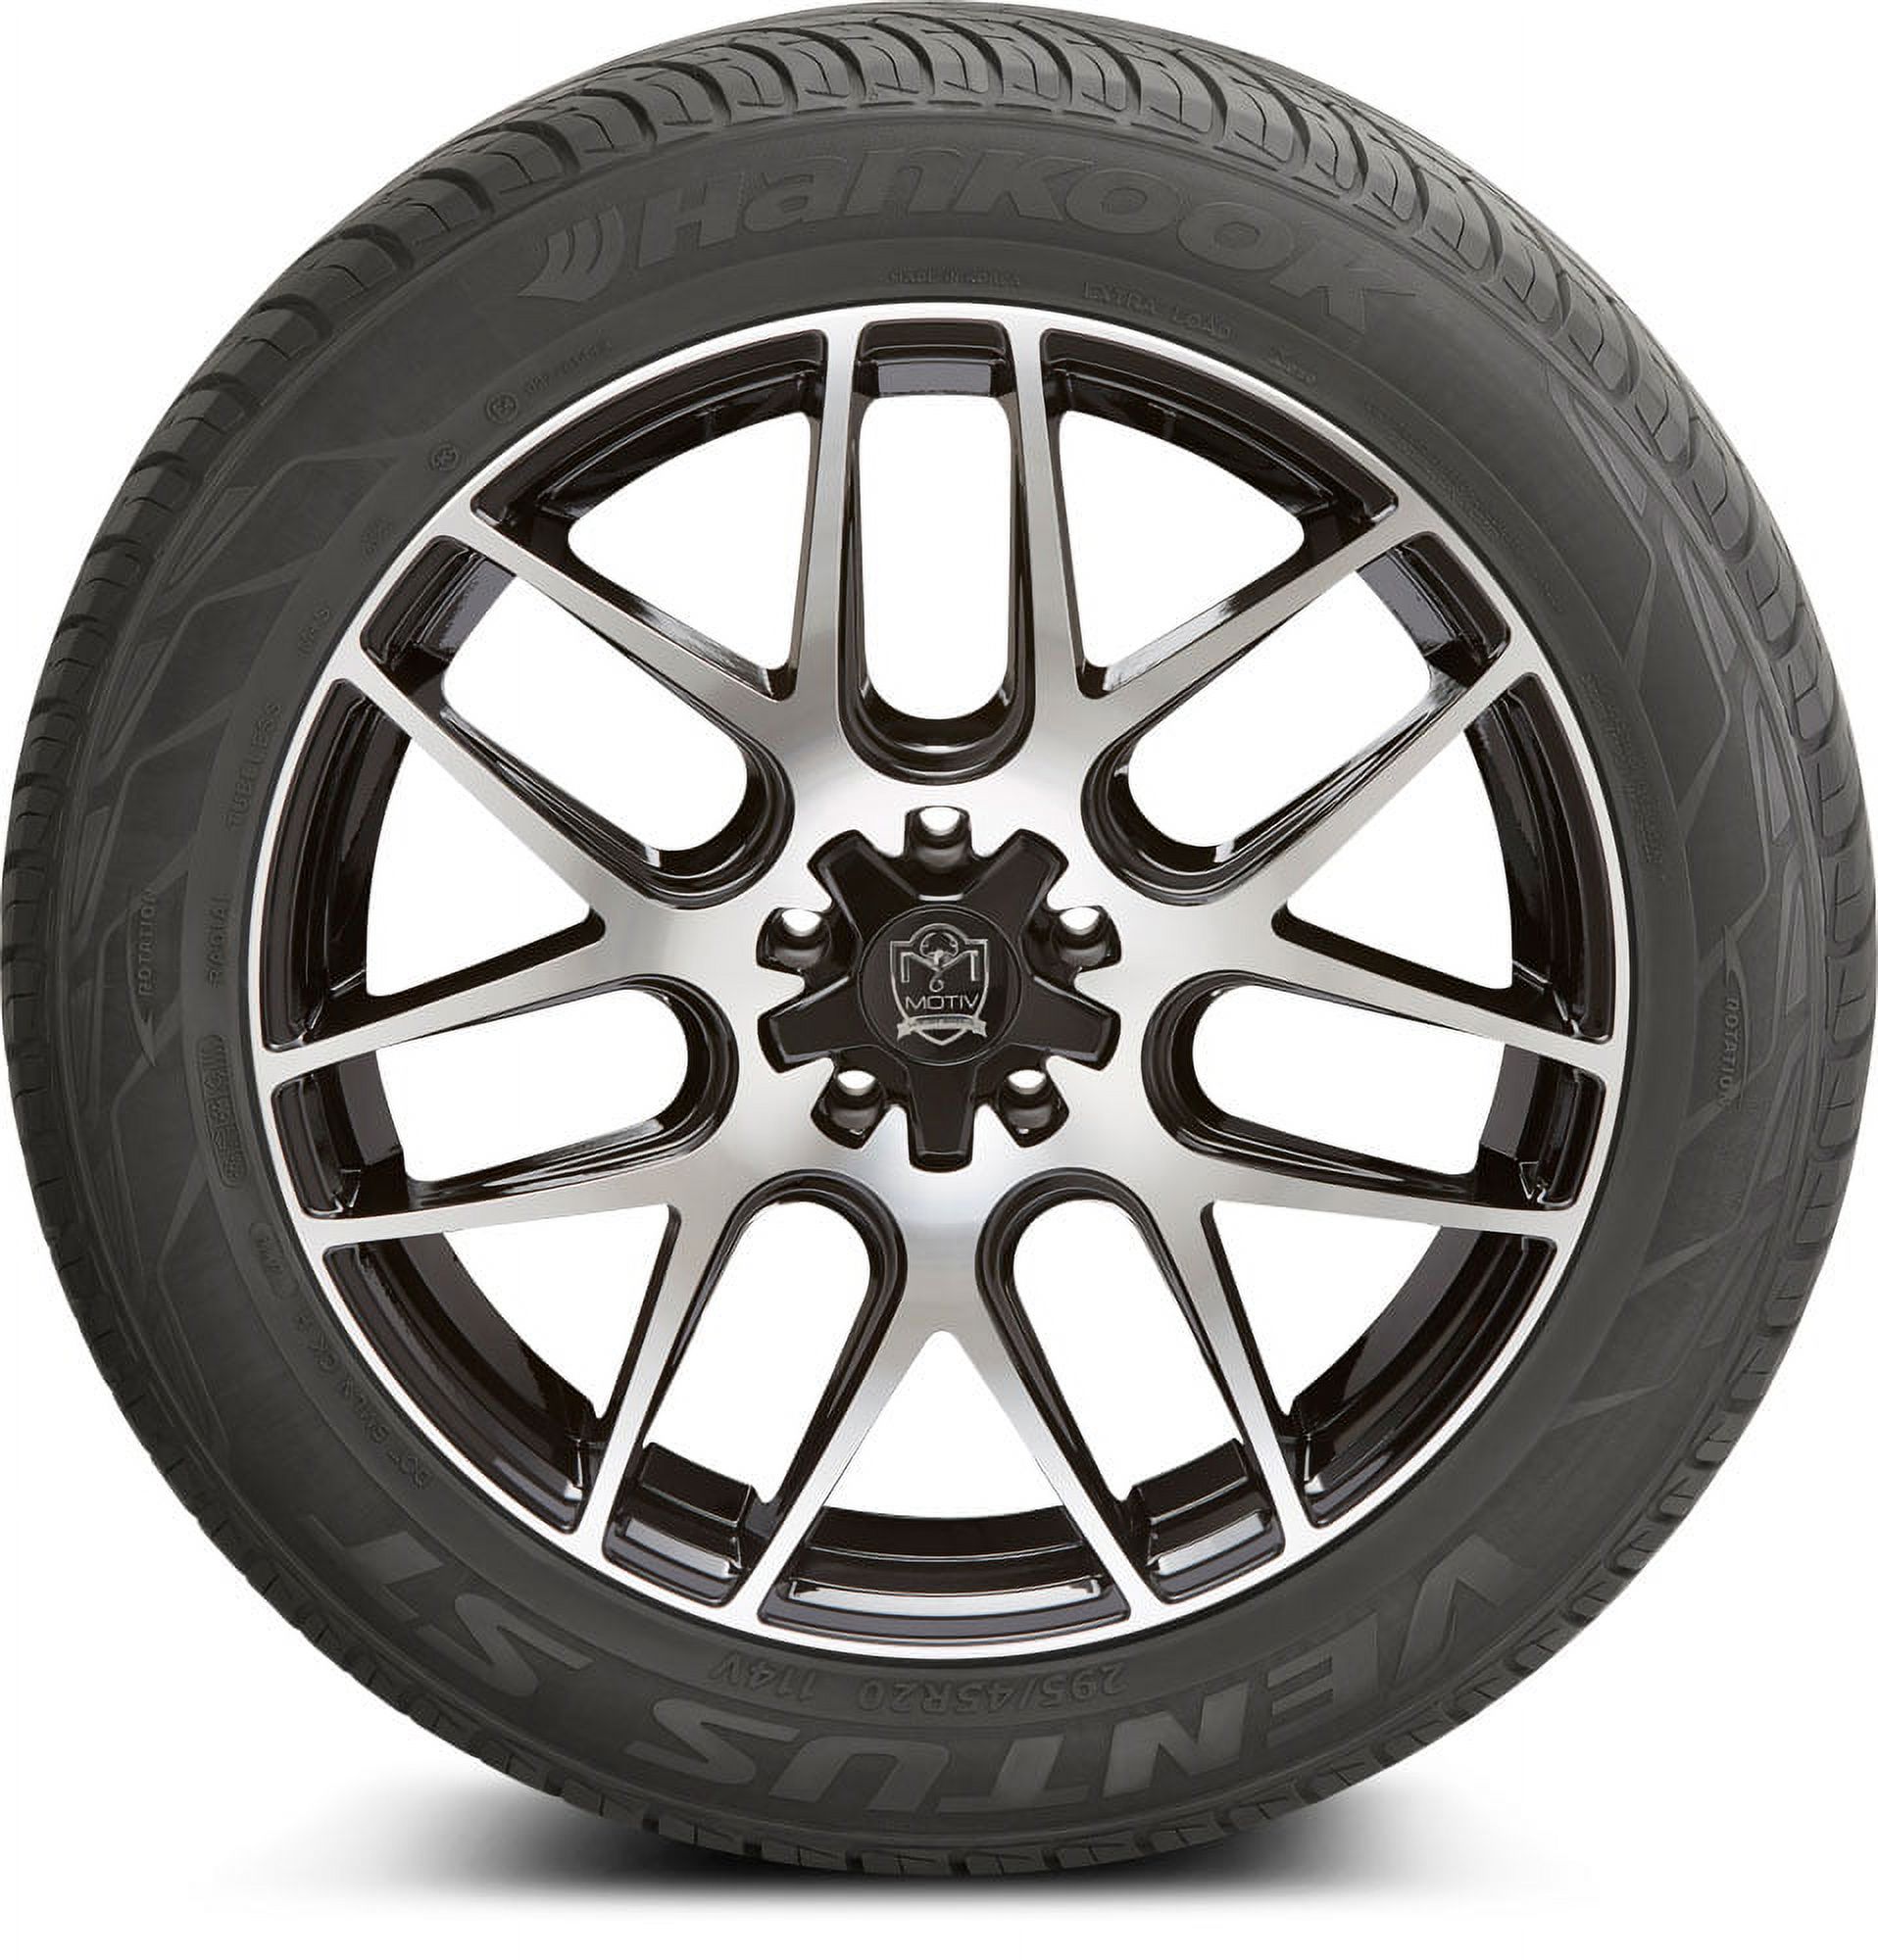 Hankook Ventus ST (RH06) All Season 275/45R22 112V XL SUV/Crossover Tire - image 2 of 3